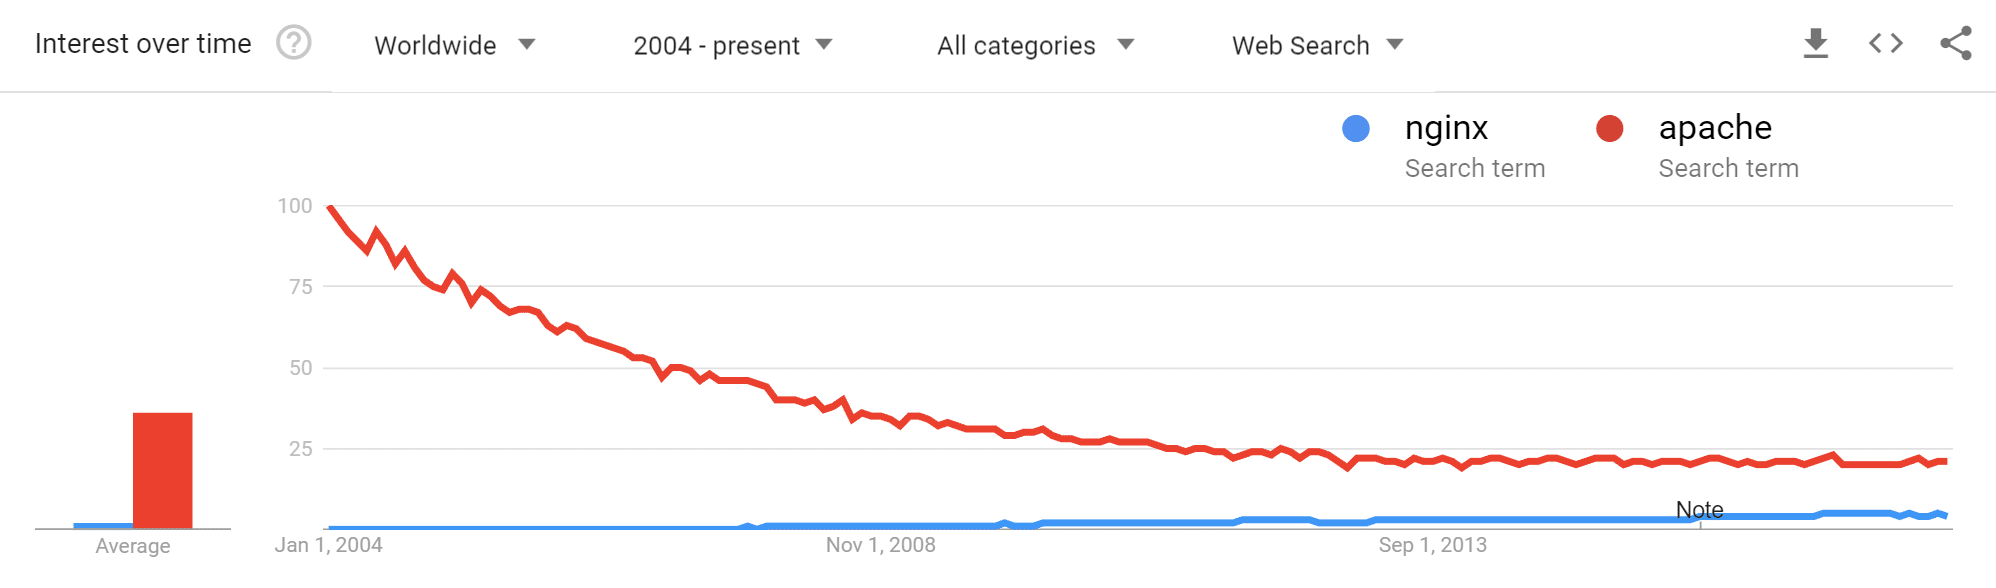 Apache vs. NGINX Google Trends Ergebnisse seit 2004